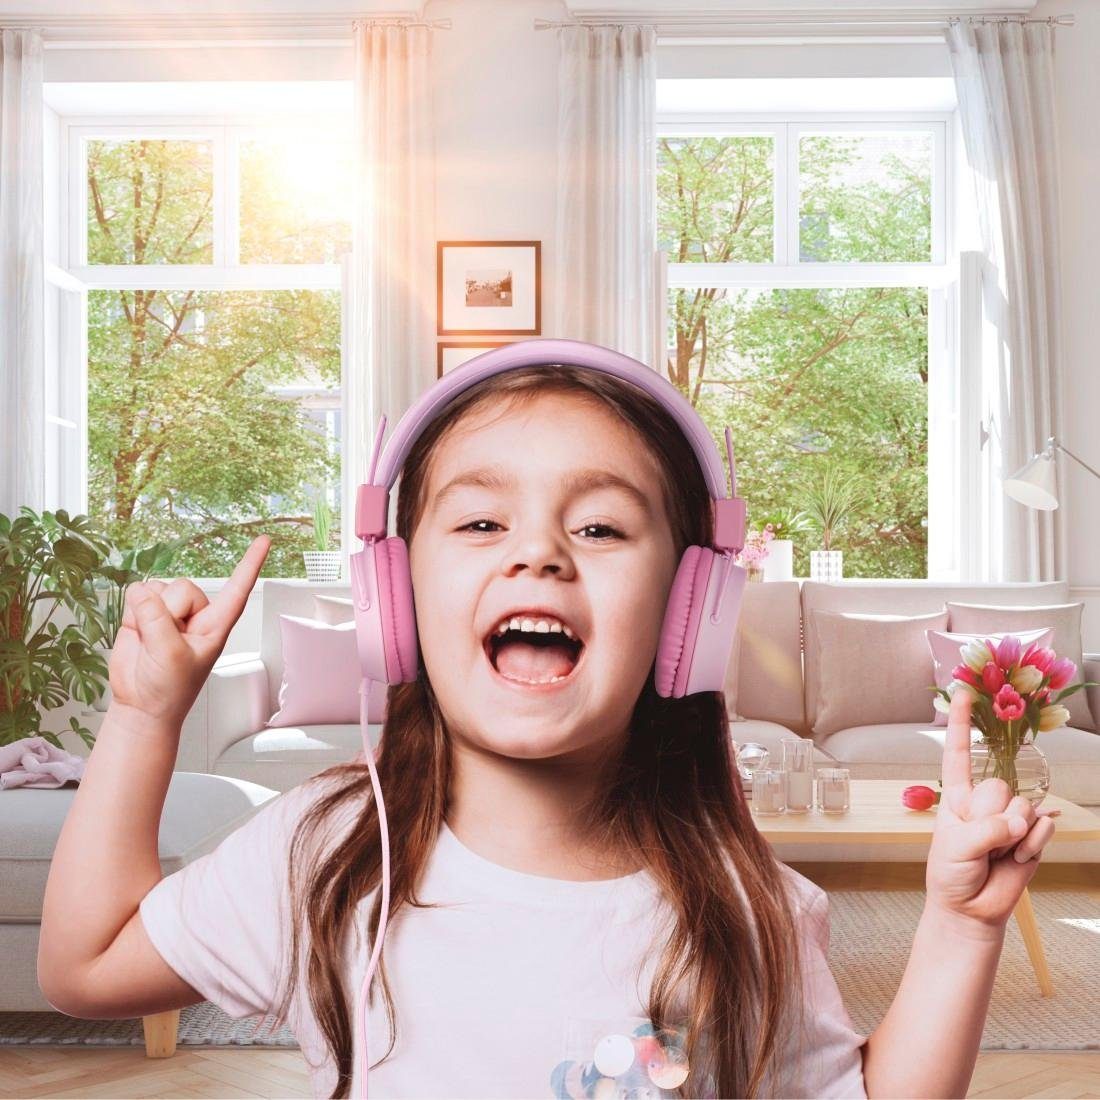 Thomson Kinderkopfhörer zusammenfaltbar, möglich) Kopfhöreranschluss On-Ear, 85dB Lautstärkebegrenzung leicht On-Ear-Kopfhörer pink auf (größenverstellbar mit weiterer Kabel